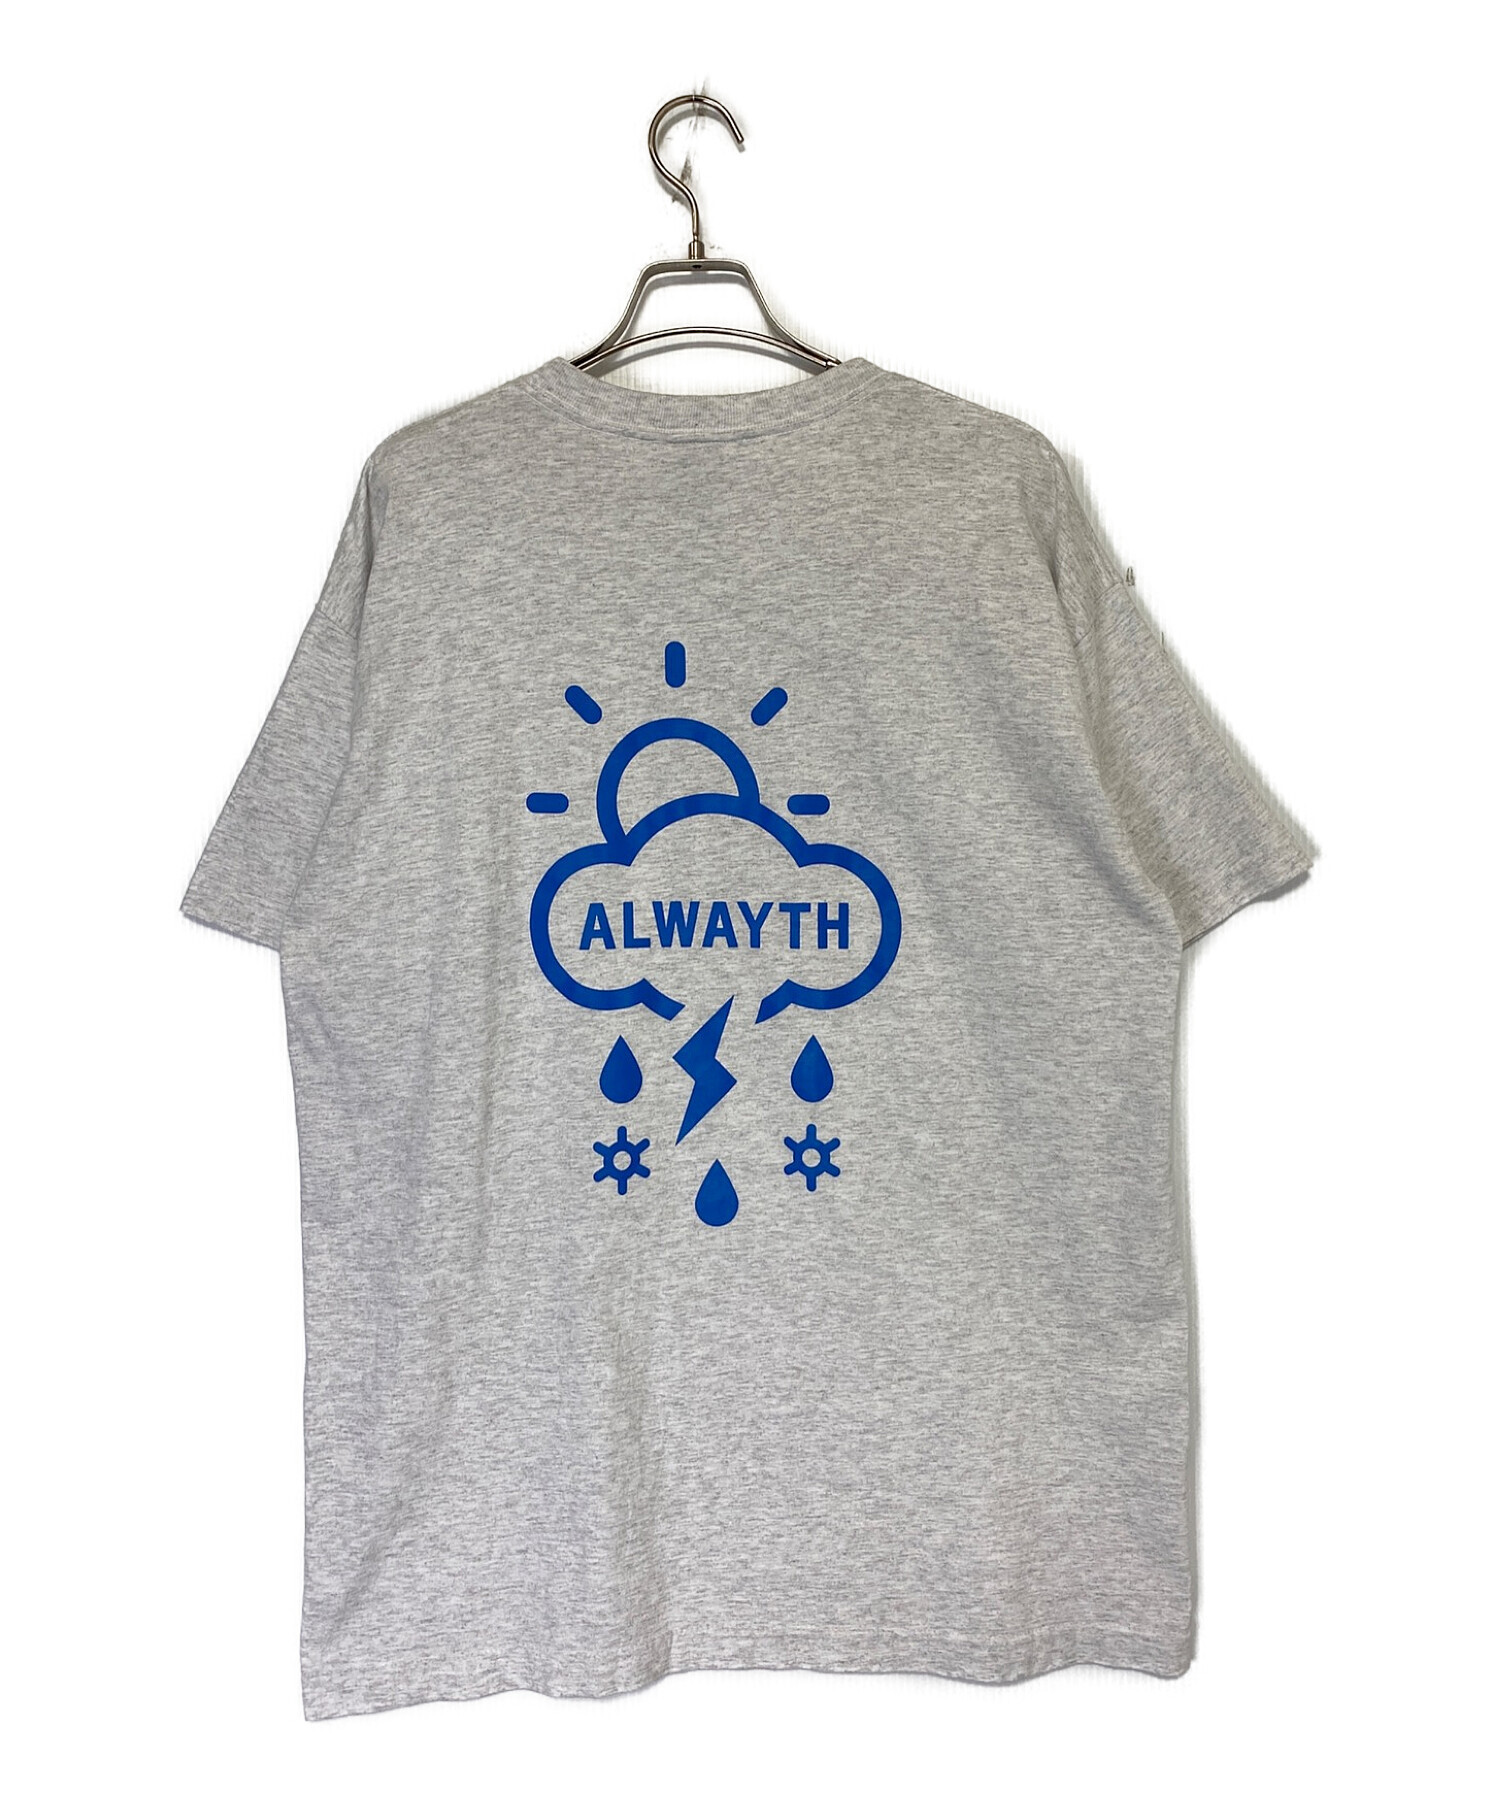 ALWAYTH (オールウェイズ) Tシャツ グレー サイズ:XL